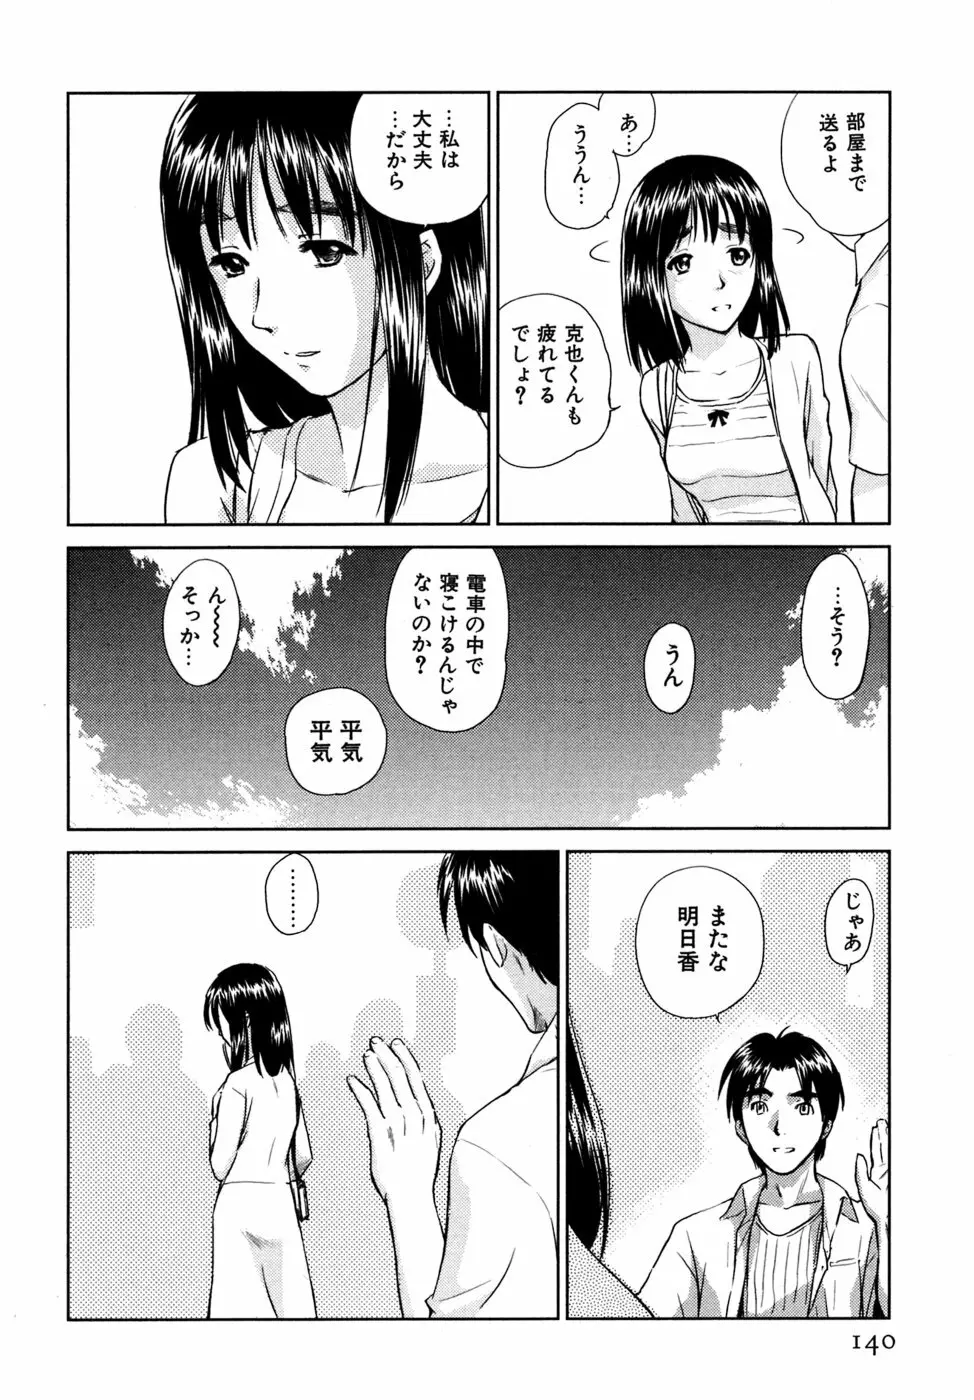 小あくま天使桃色系 03 141ページ